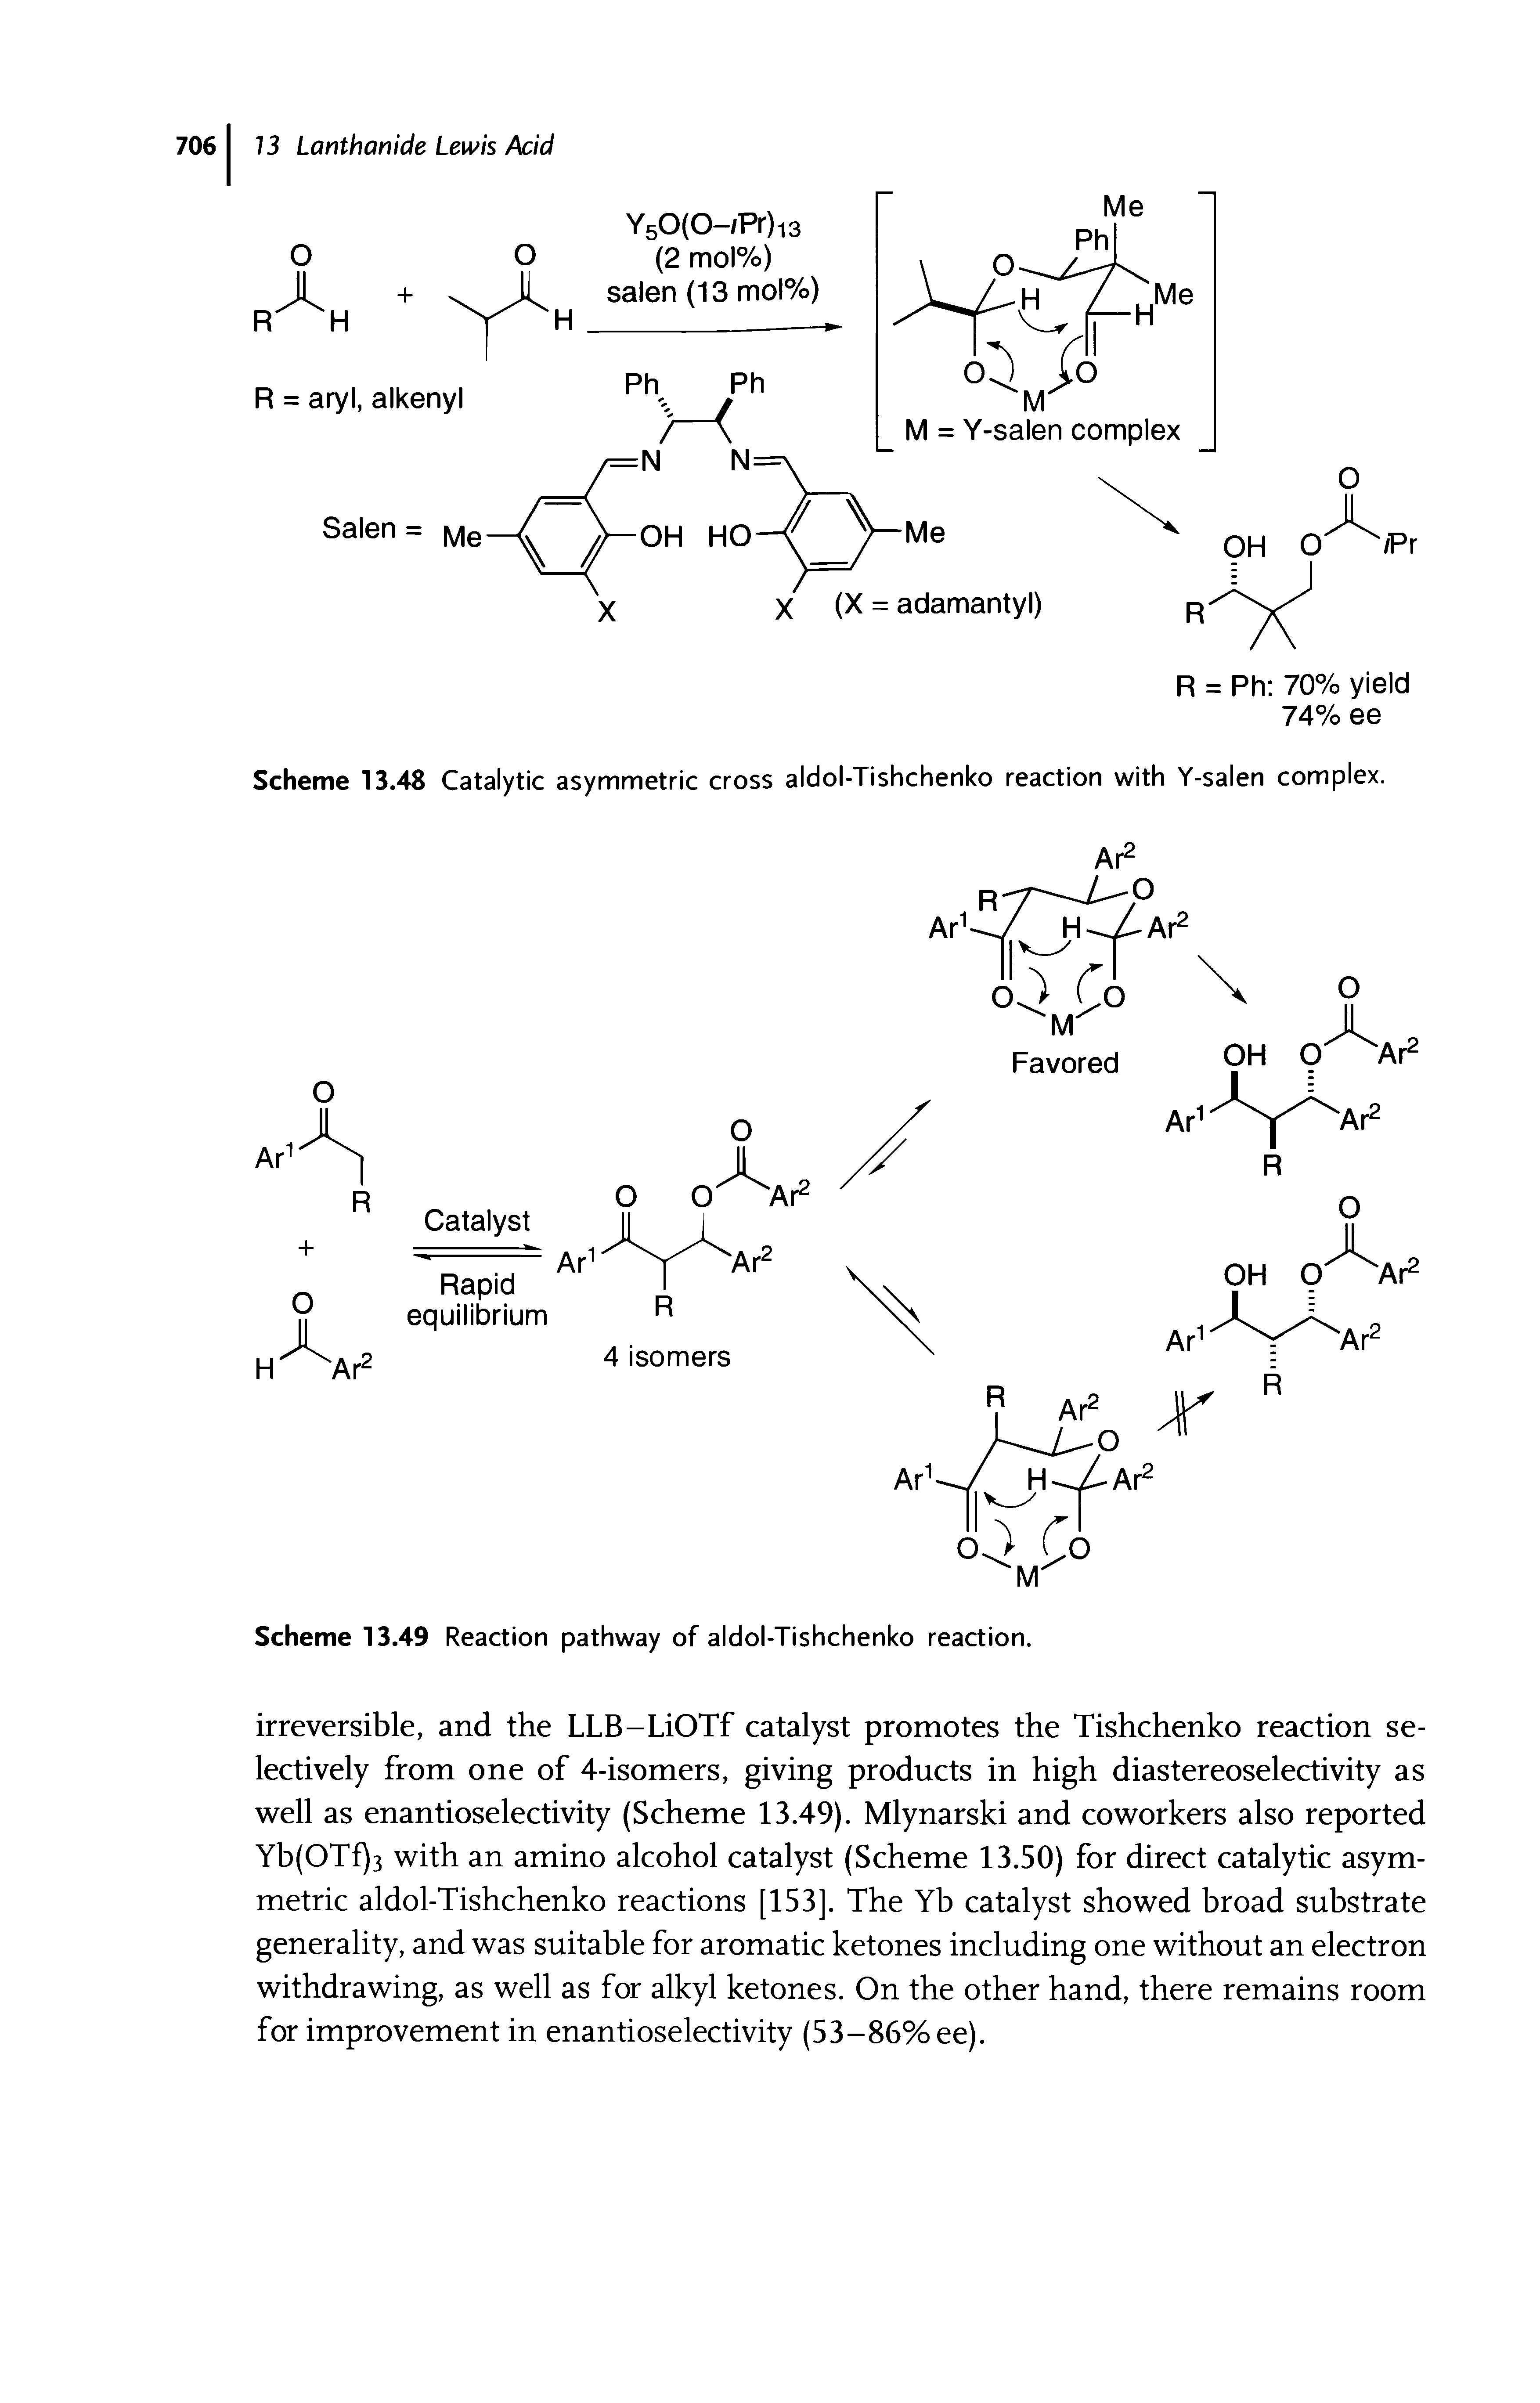 Scheme 13.48 Catalytic asymmetric cross aldol-Tishchenko reaction with Y-salen complex.